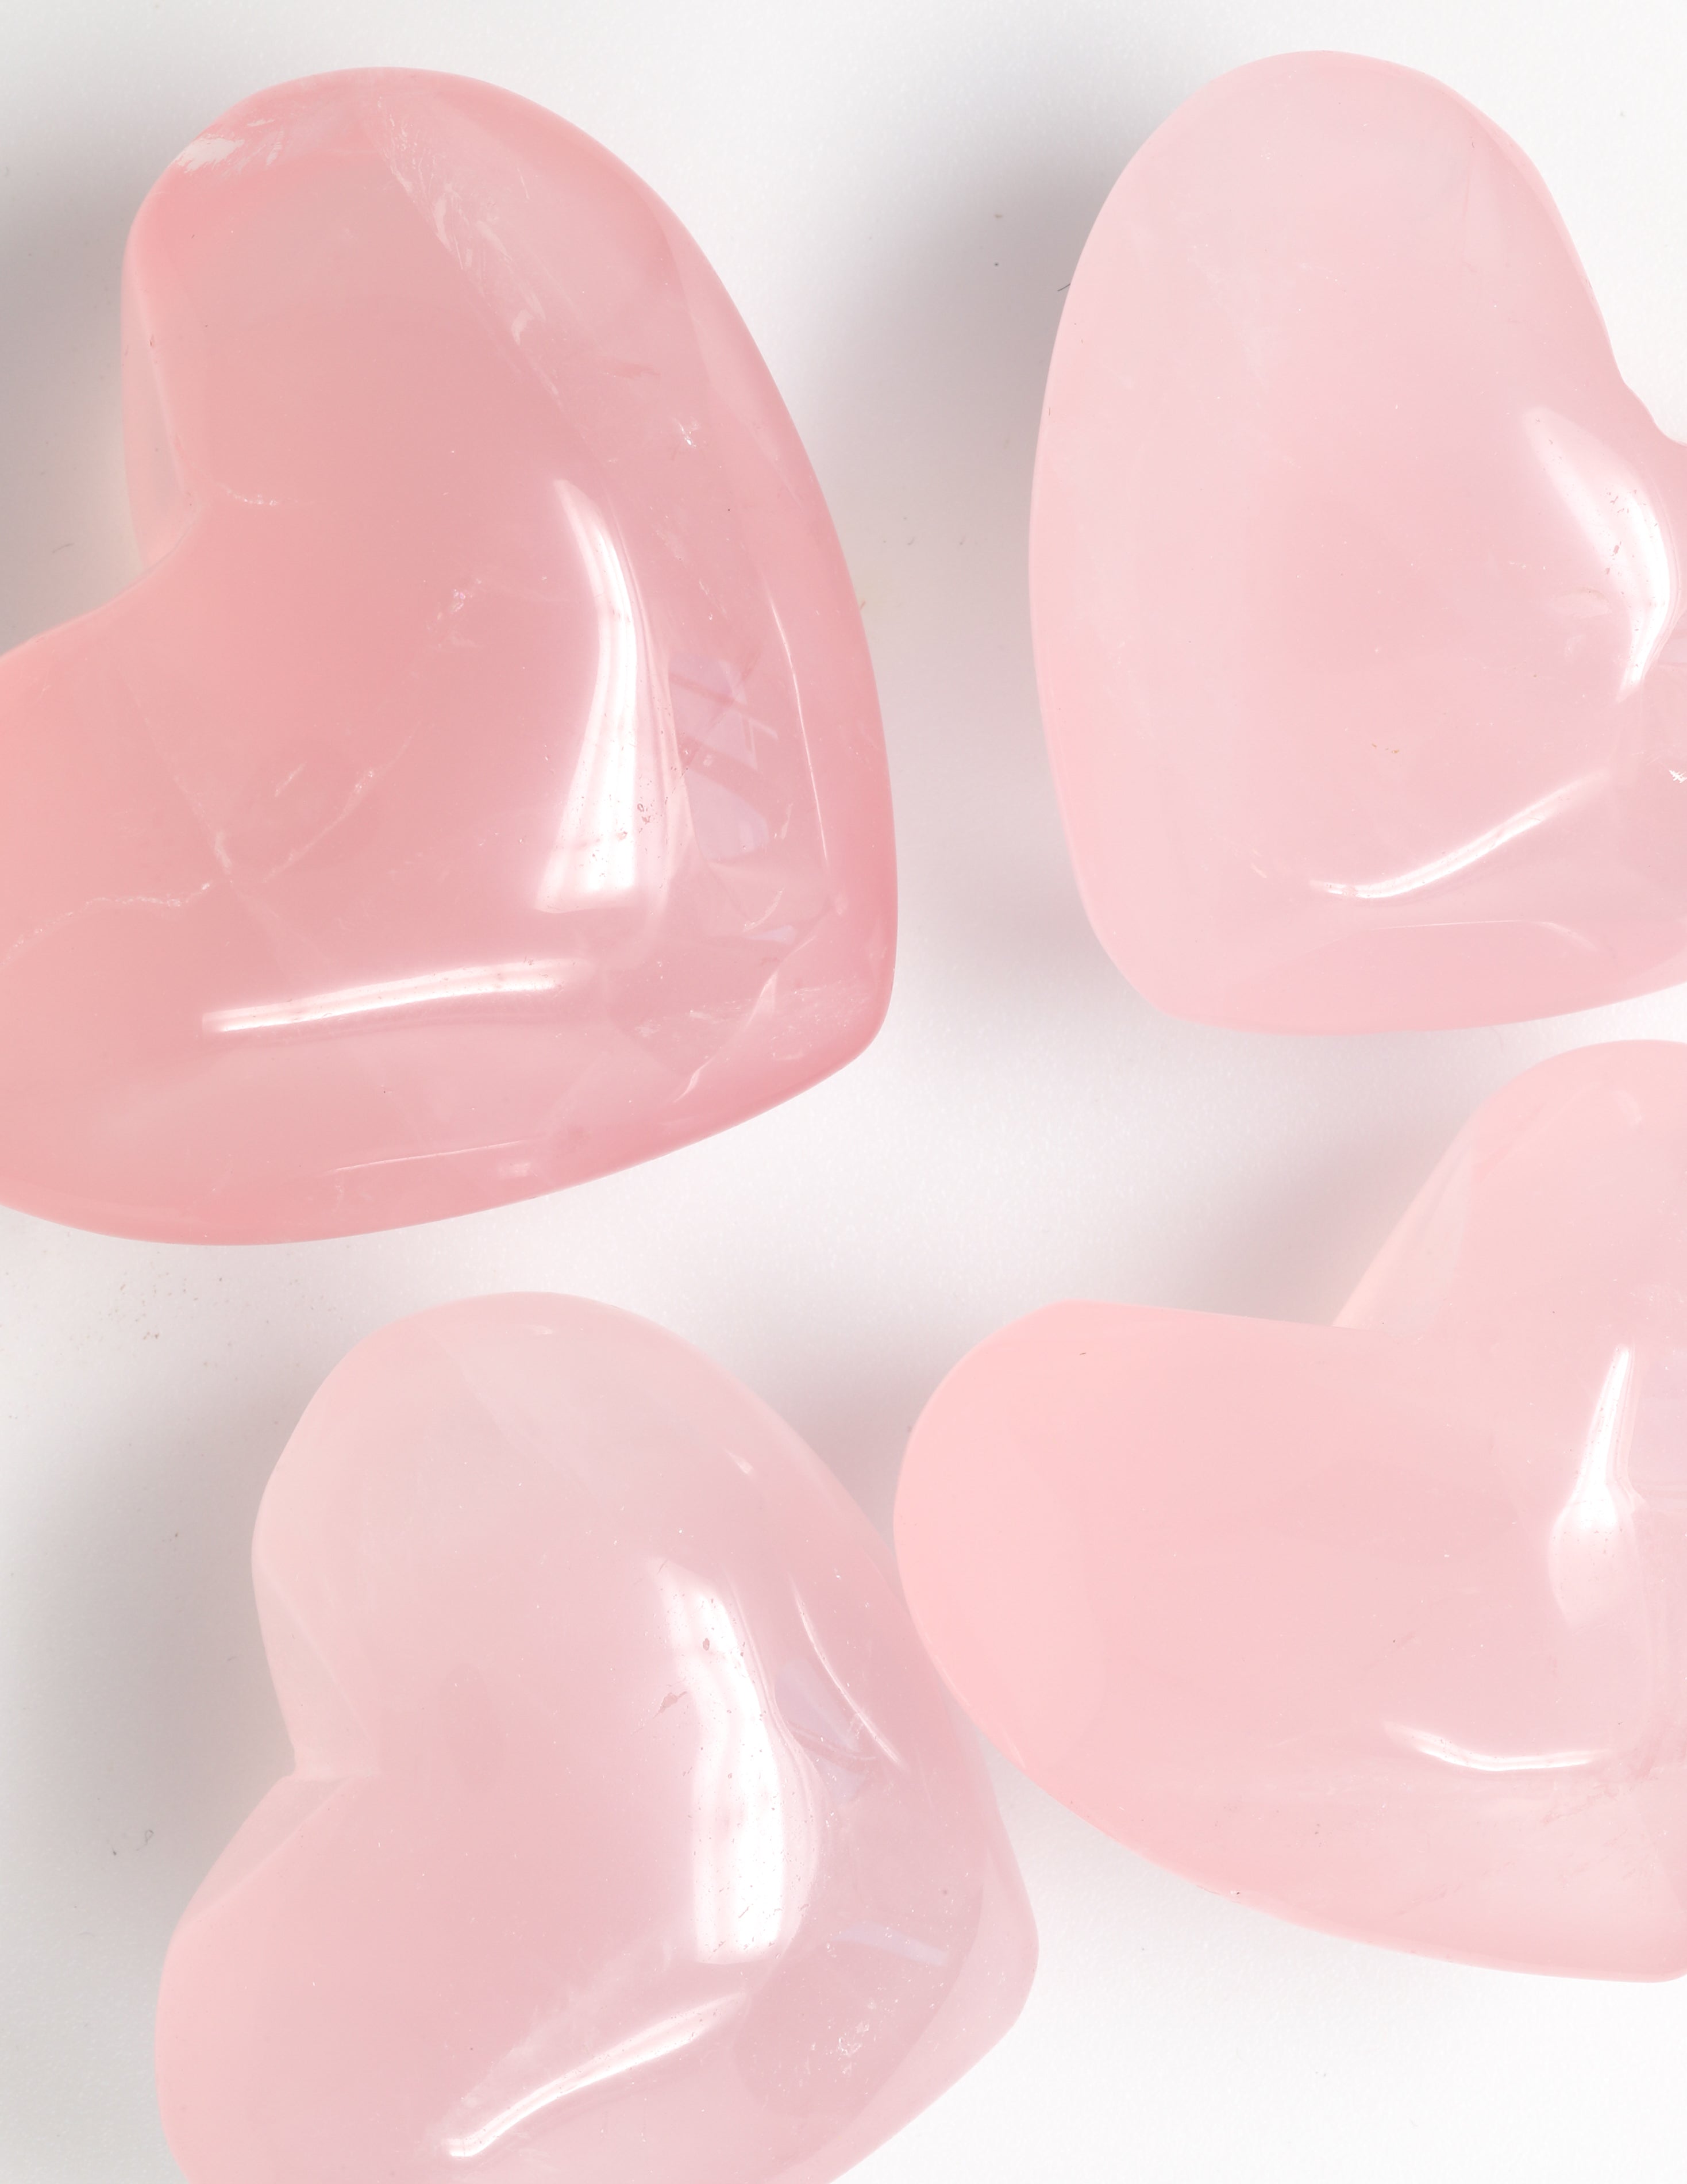 Rose Quartz Carved Heart Crystal